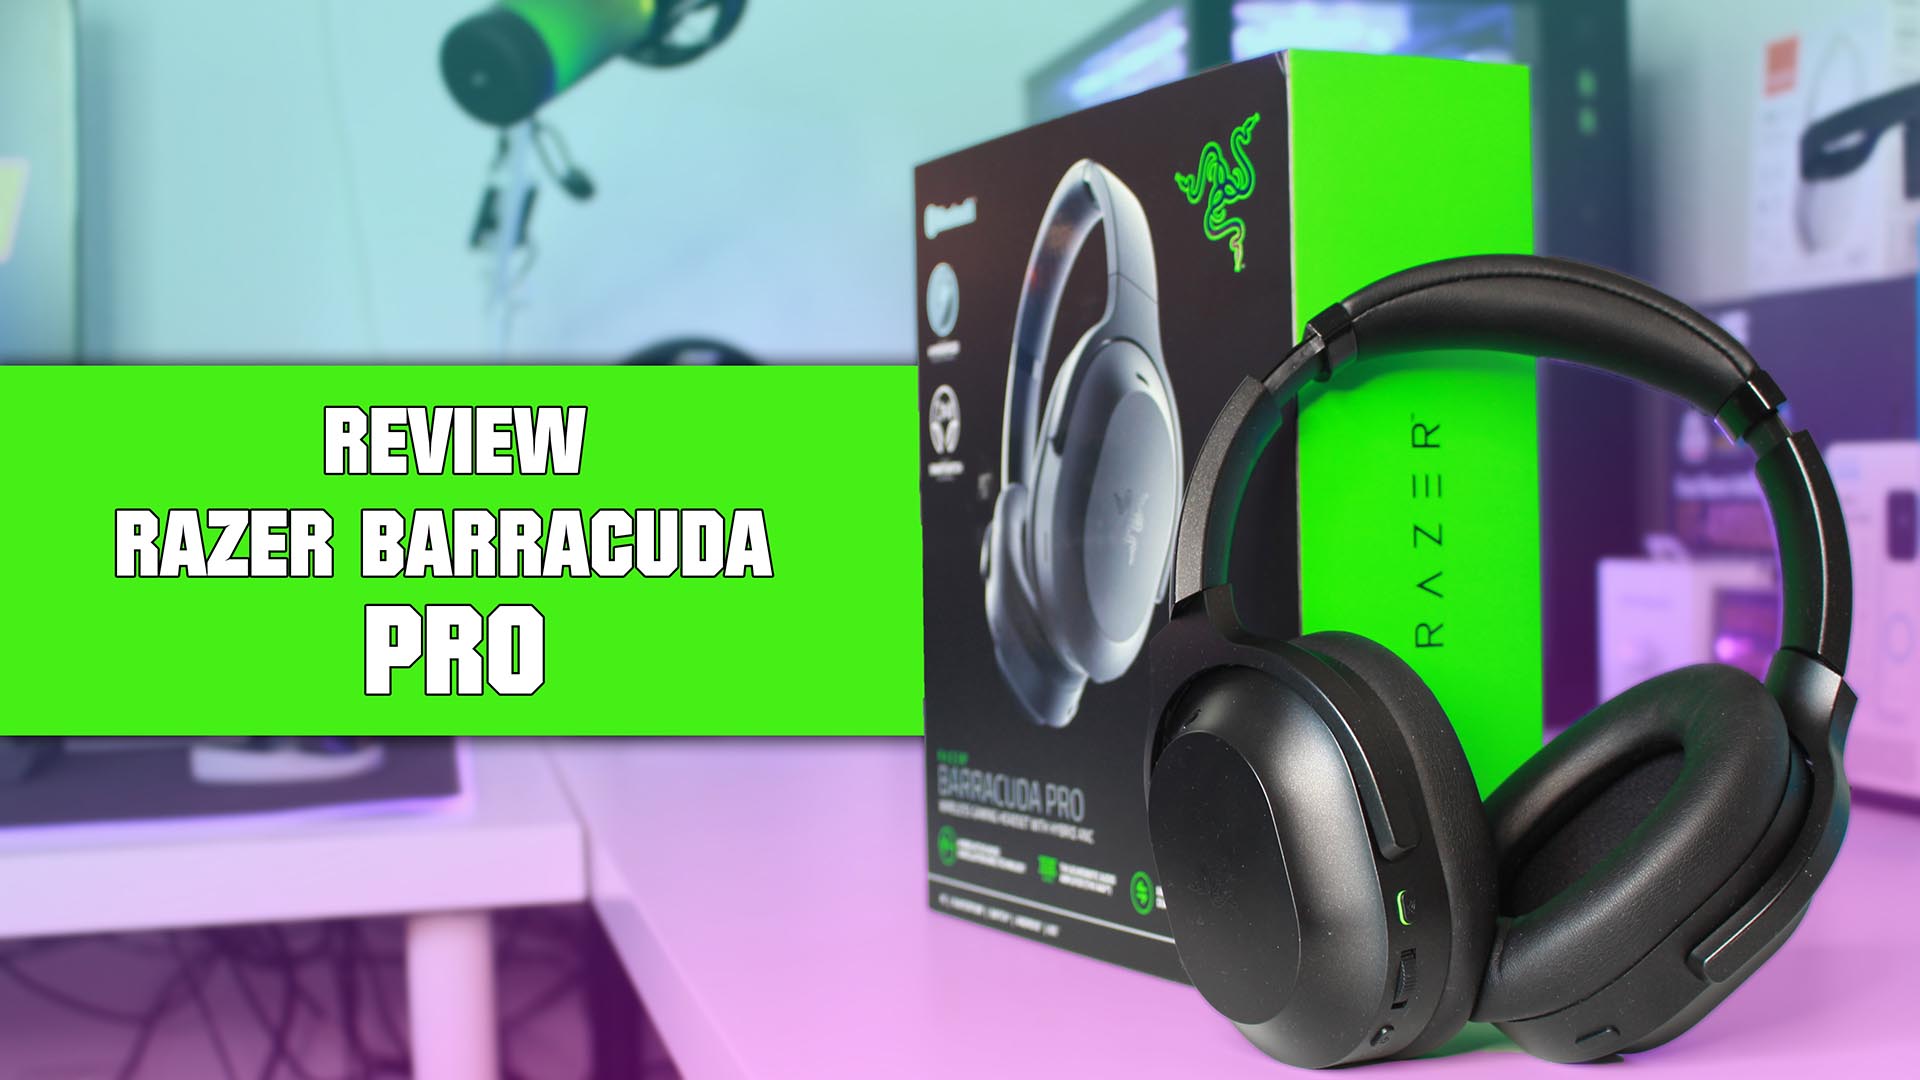 Review Razer Barracuda Pro en español, análisis y opinión